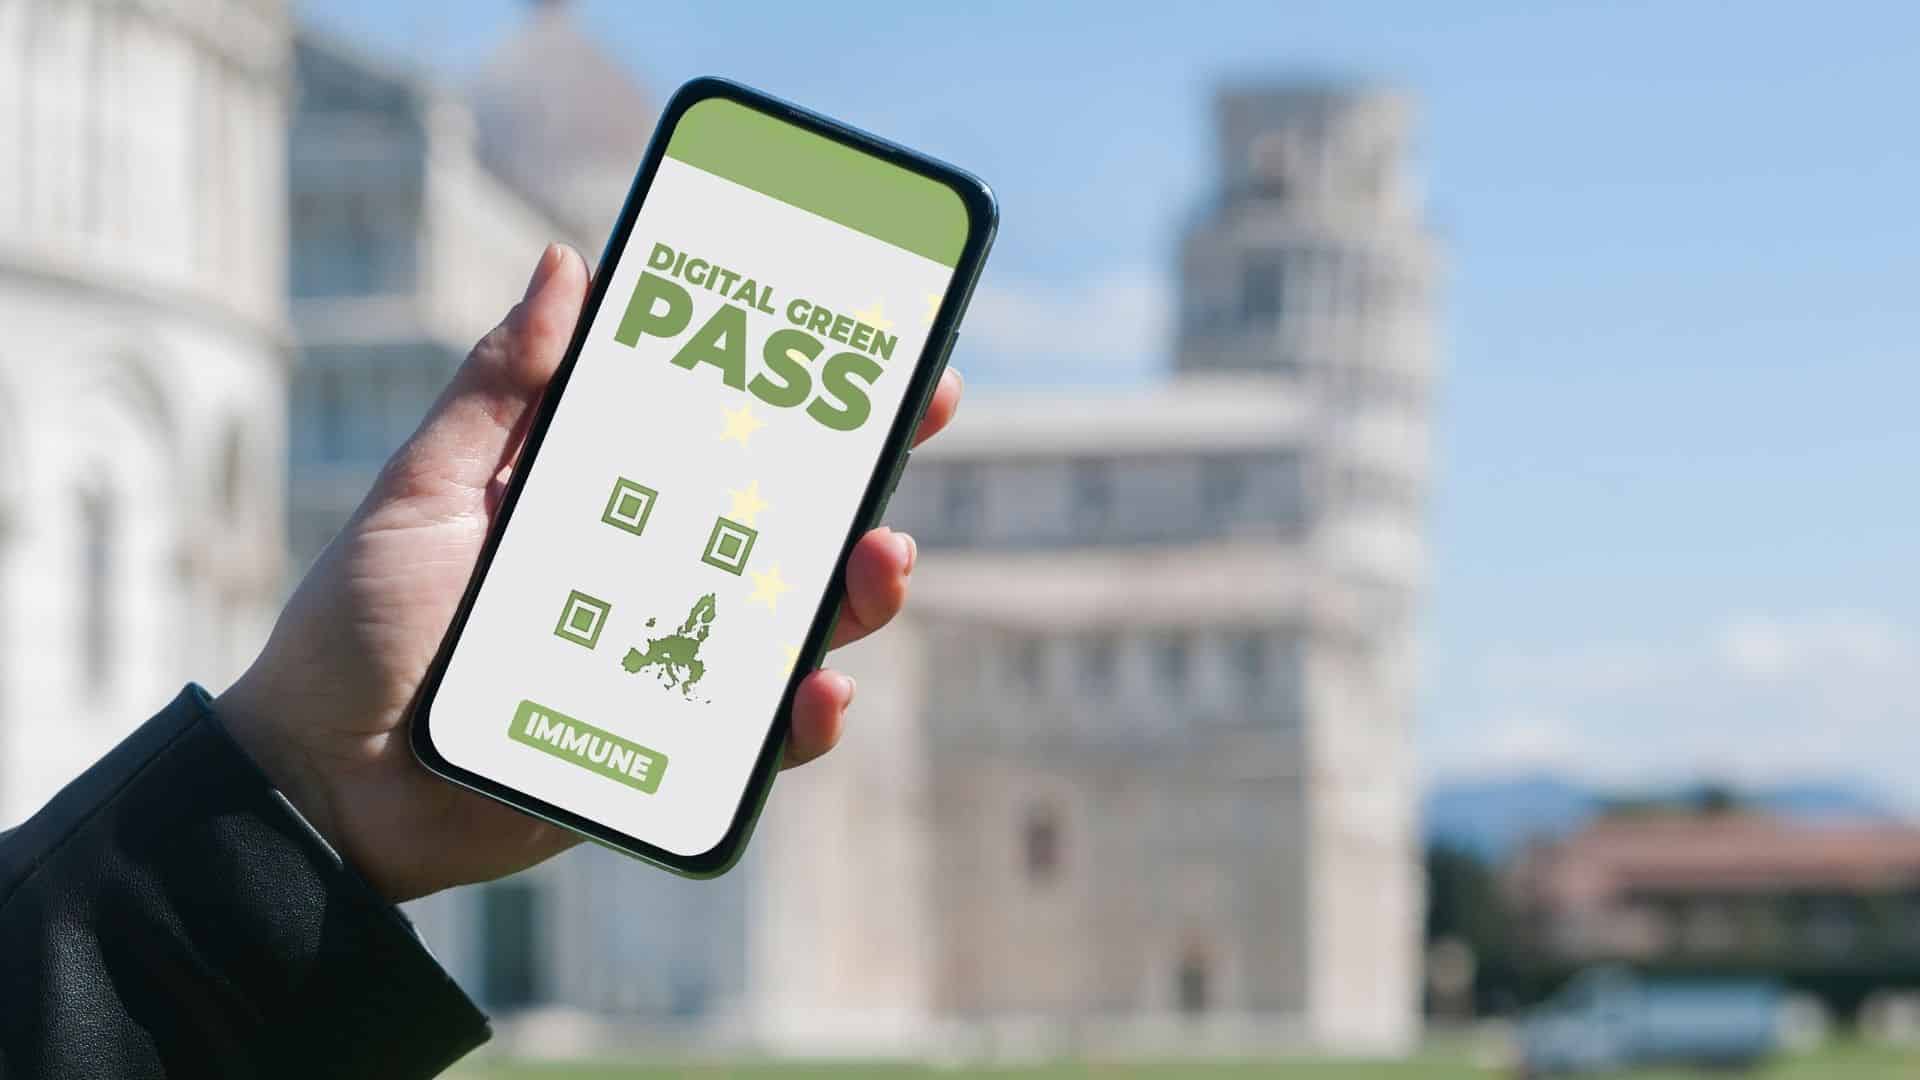 Verrà richiesto il “green pass” per viaggiare in terno o in aereo o per accedere a determinati locali o posti di lavoro